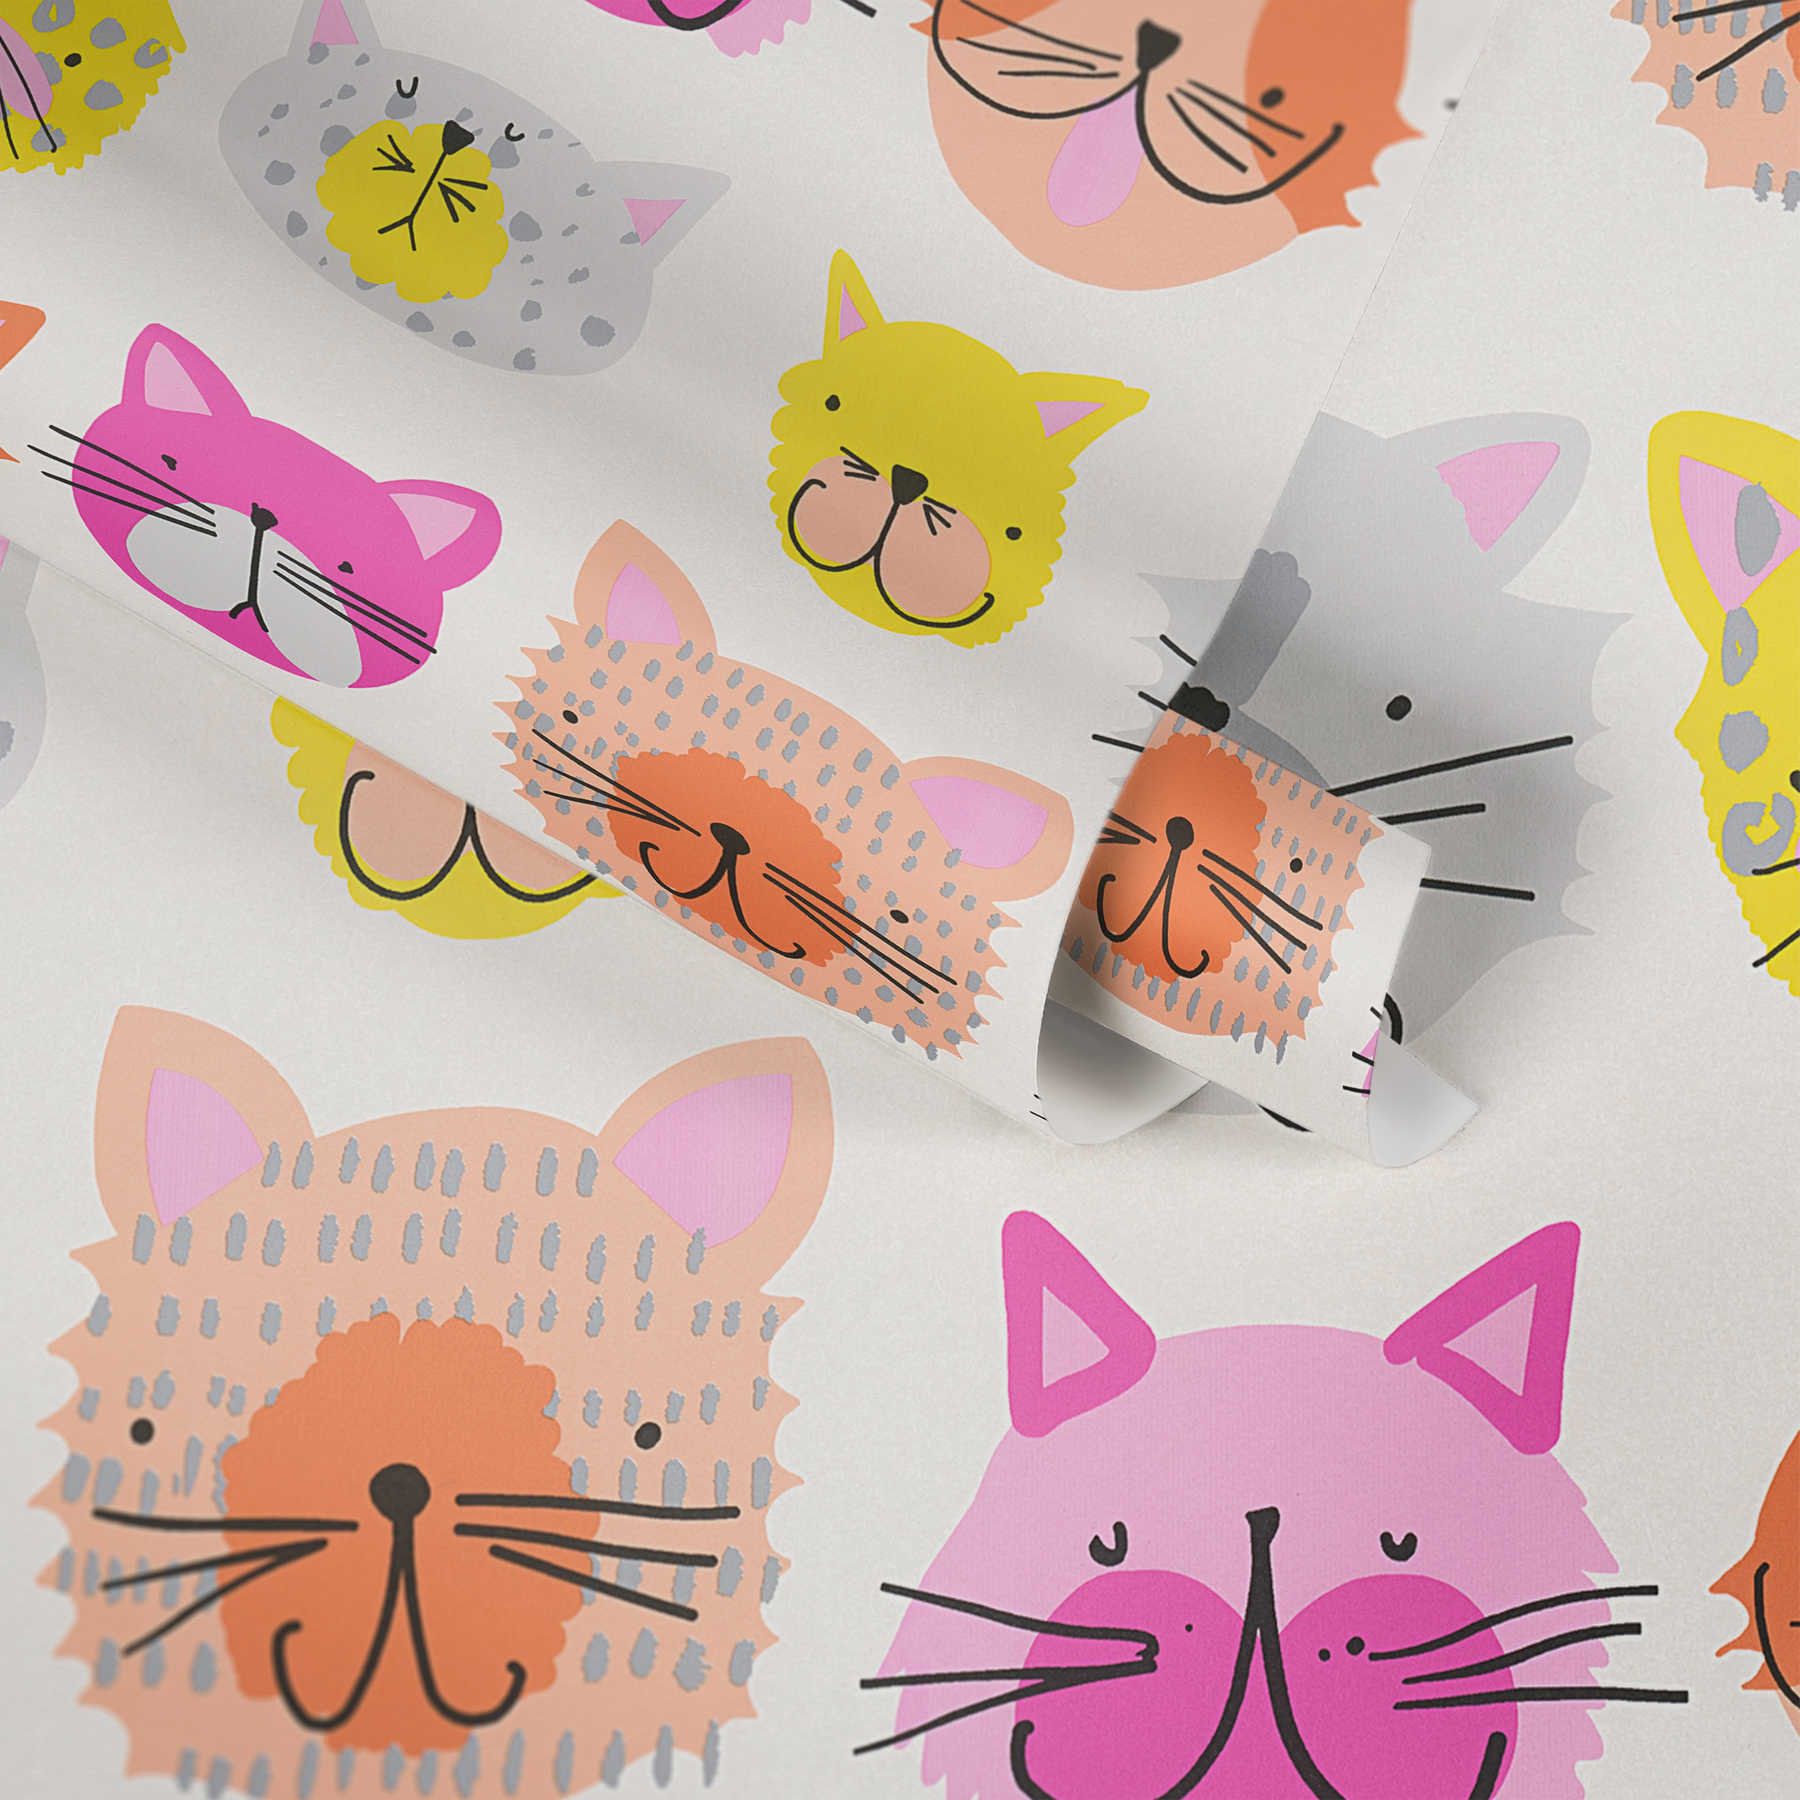             Papier peint chat coloré style bande dessinée pour chambre d'enfant - rose, jaune
        